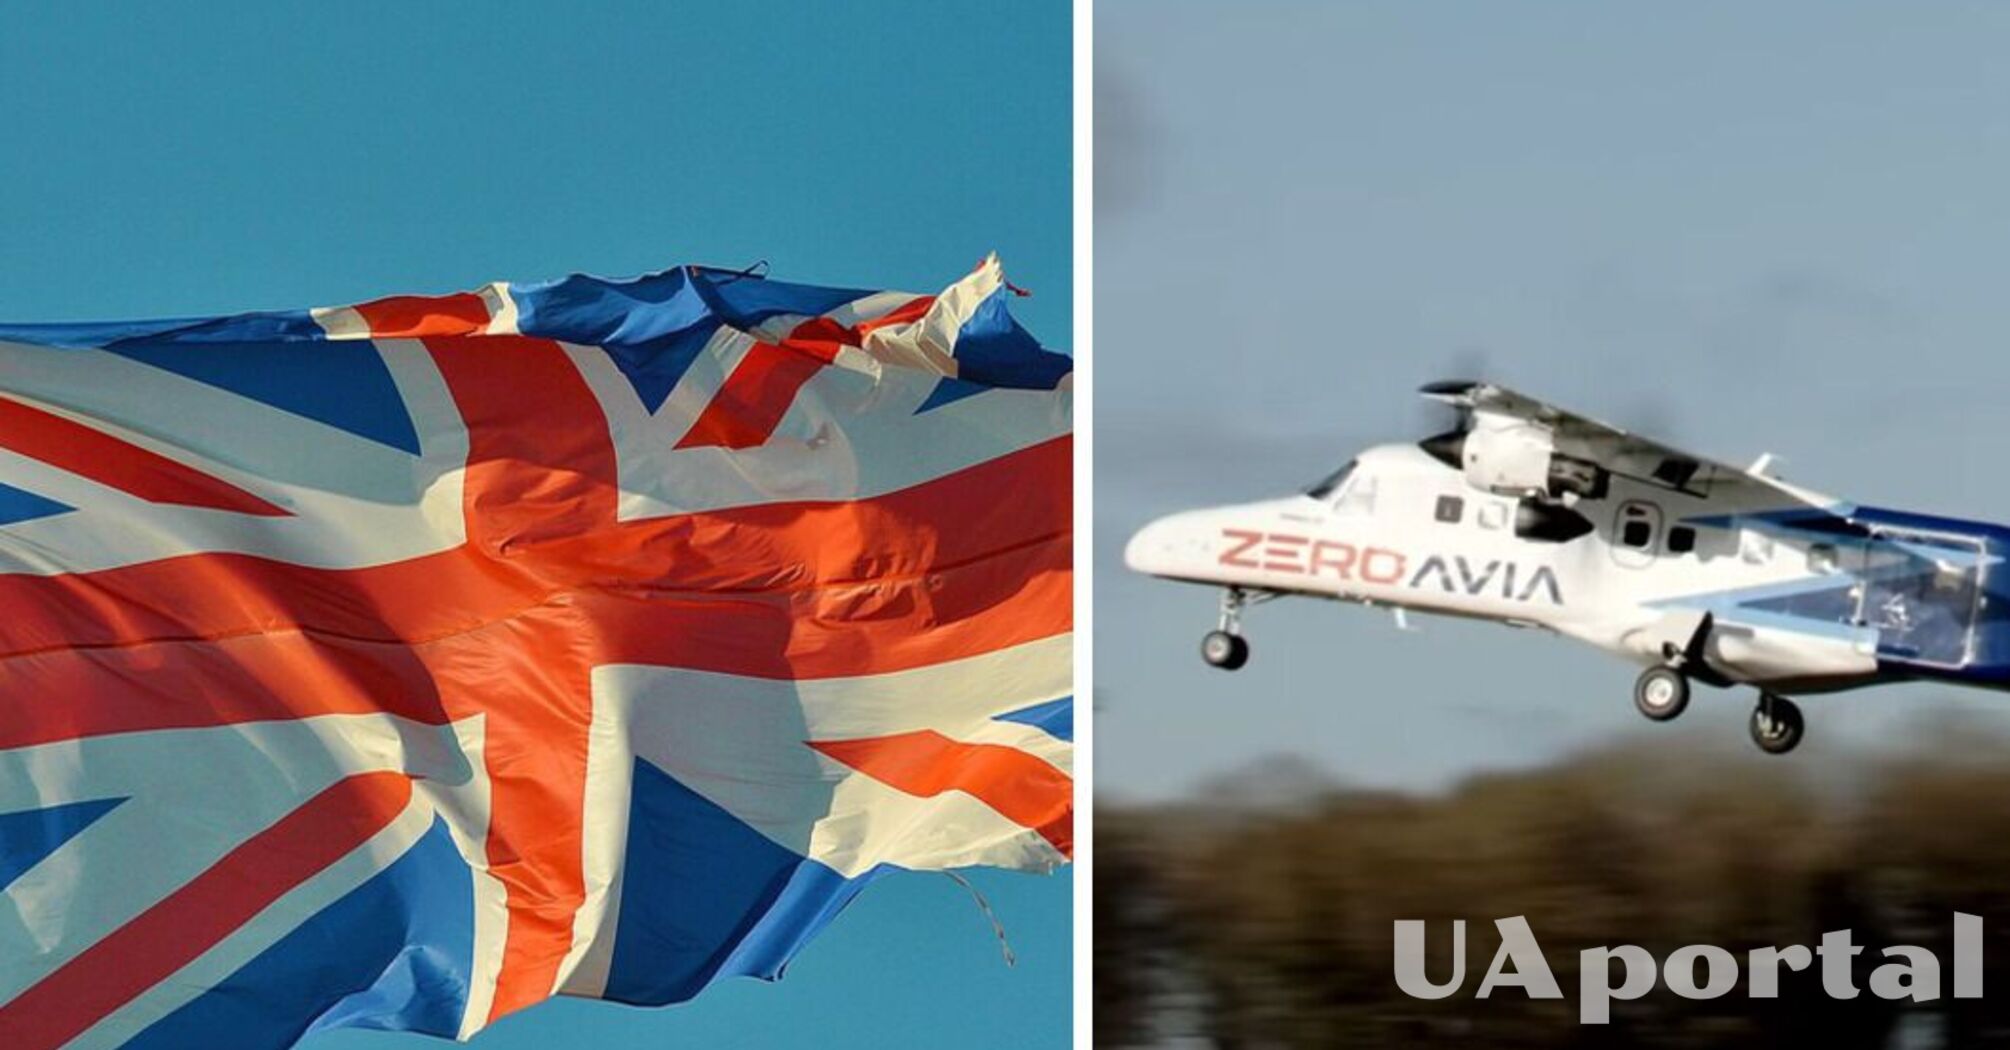 У Британії пройшли перші льотні випробовування літака на водні (відео)